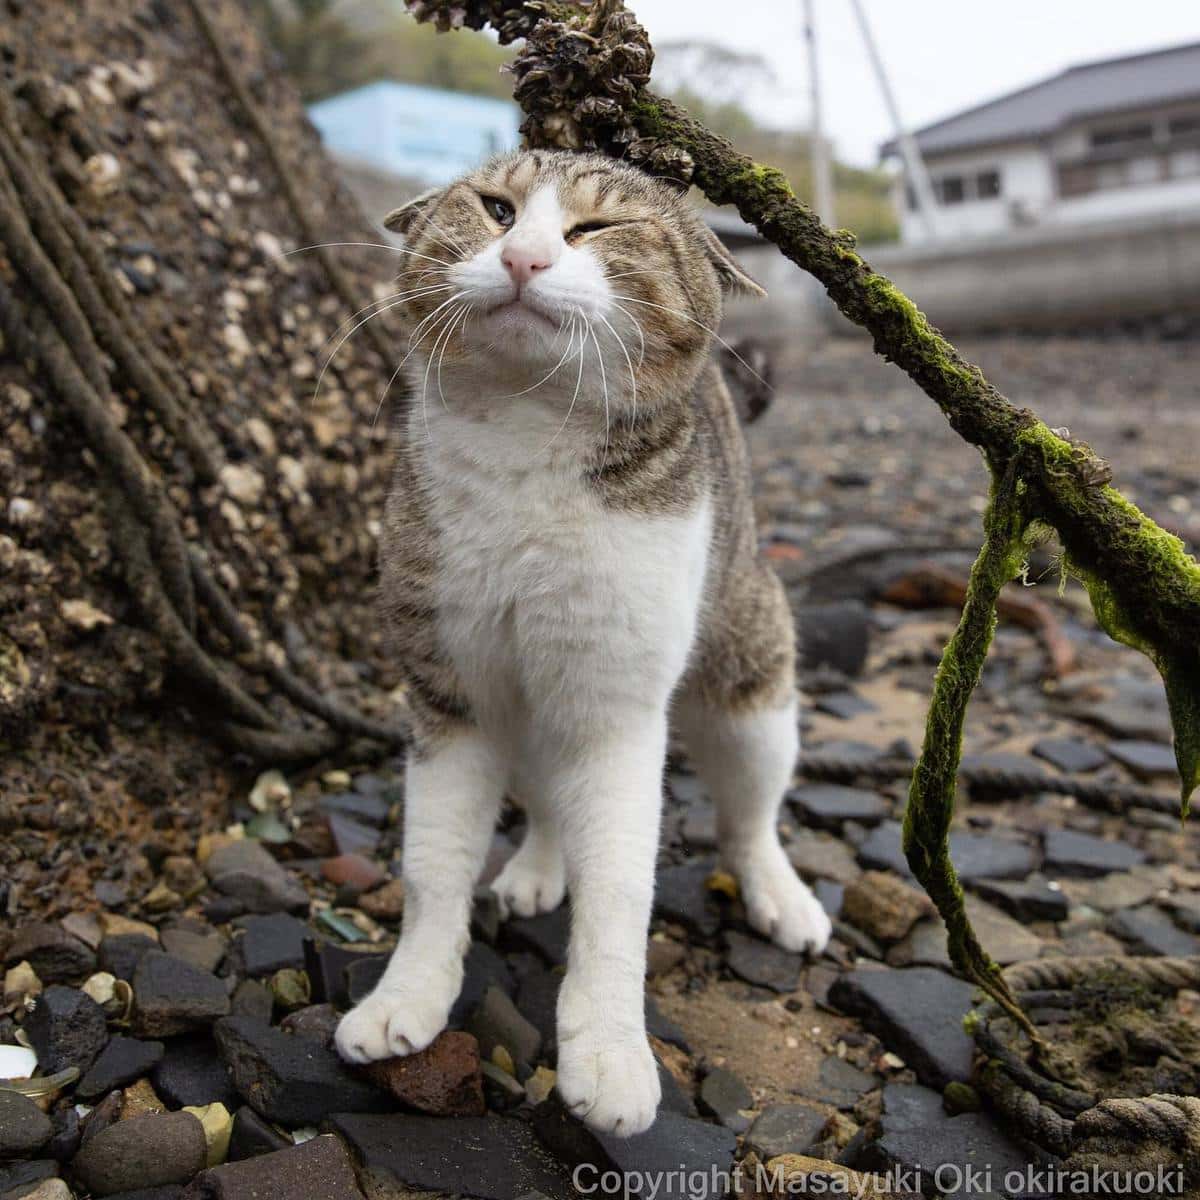 20 снимков уличных котов от японского фотографа, который как никто умеет запечатлевать харизму этих бродяг 61